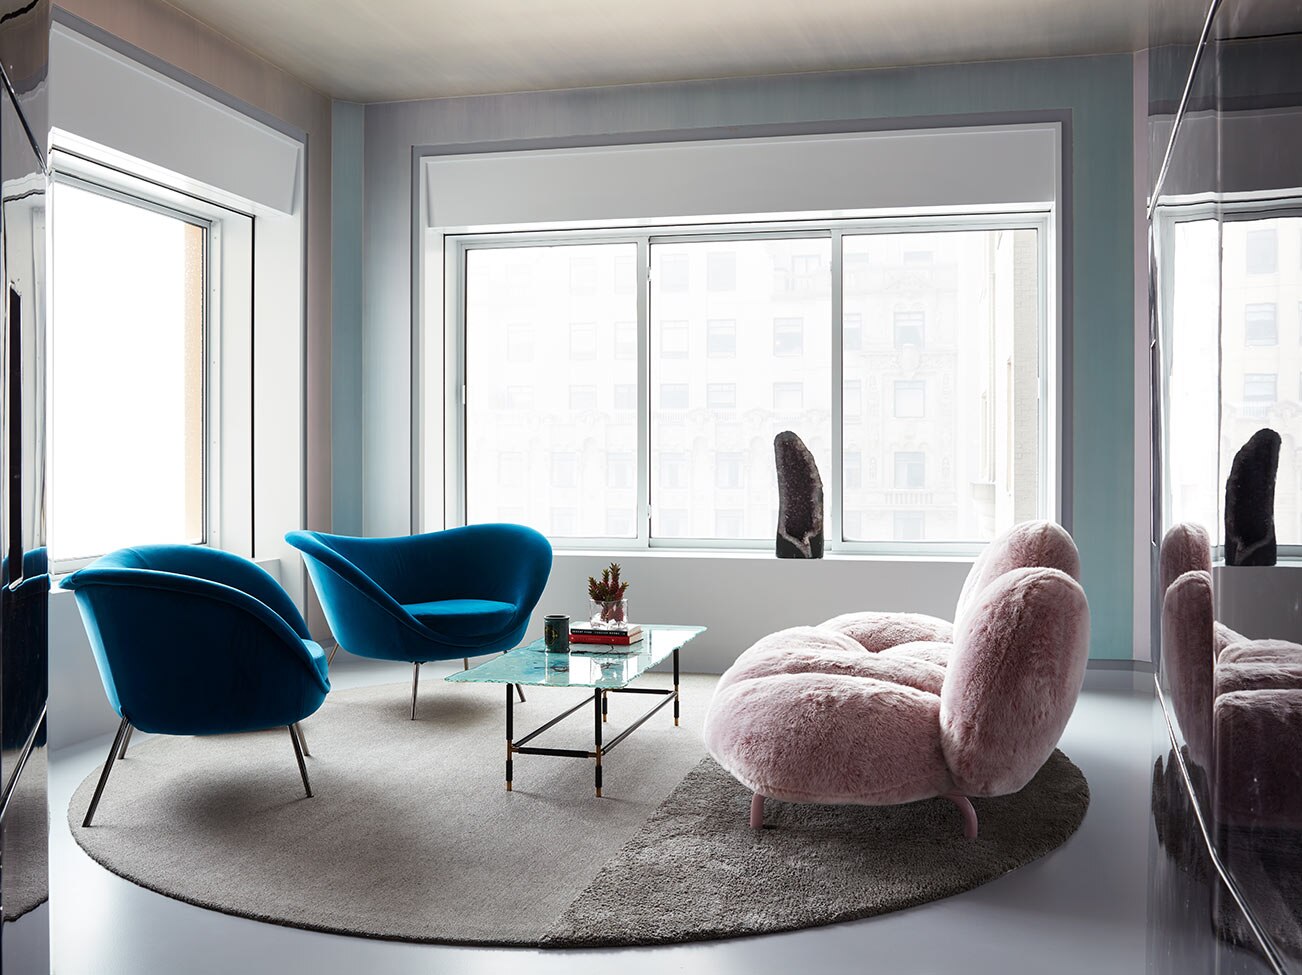 Petit salon baigné de lumière naturelle qui entre par ses nombreuses fenêtres, avec murs bleu pâle, meubles de style contemporain et petit tapis circulaire.